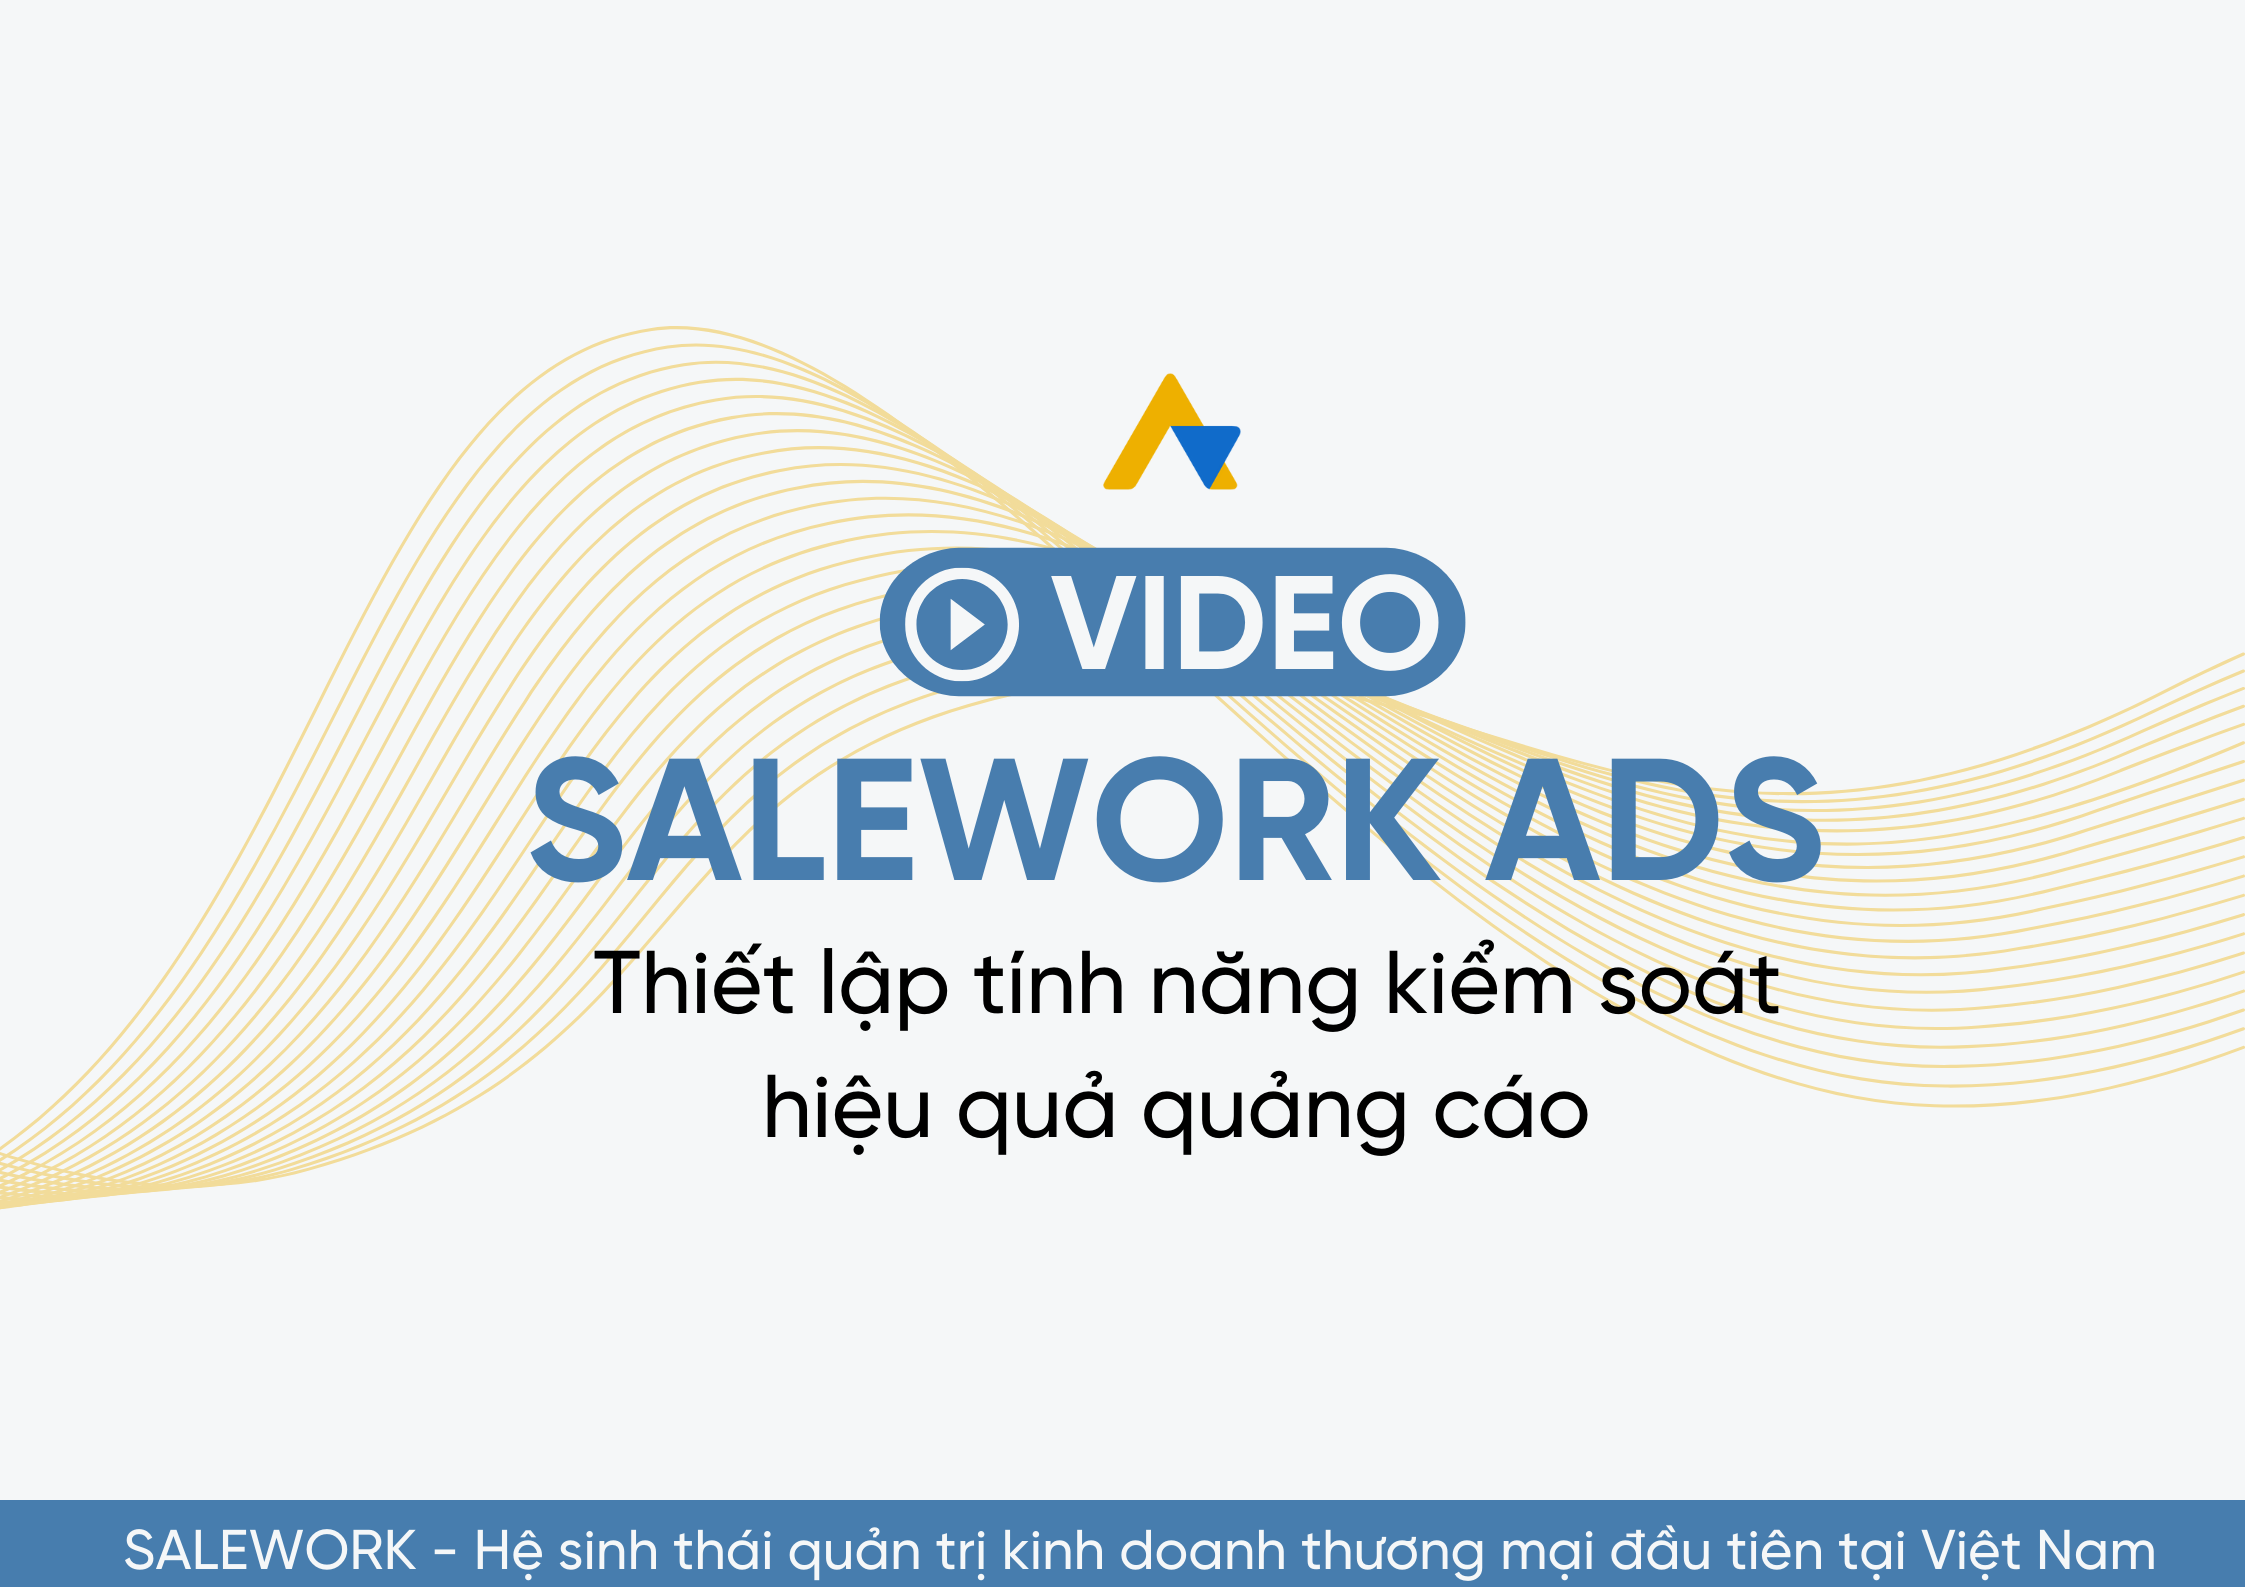 [VIDEO] Thiết lập tính năng kiểm soát hiệu quả quảng cáo tại Salework Ads - 18